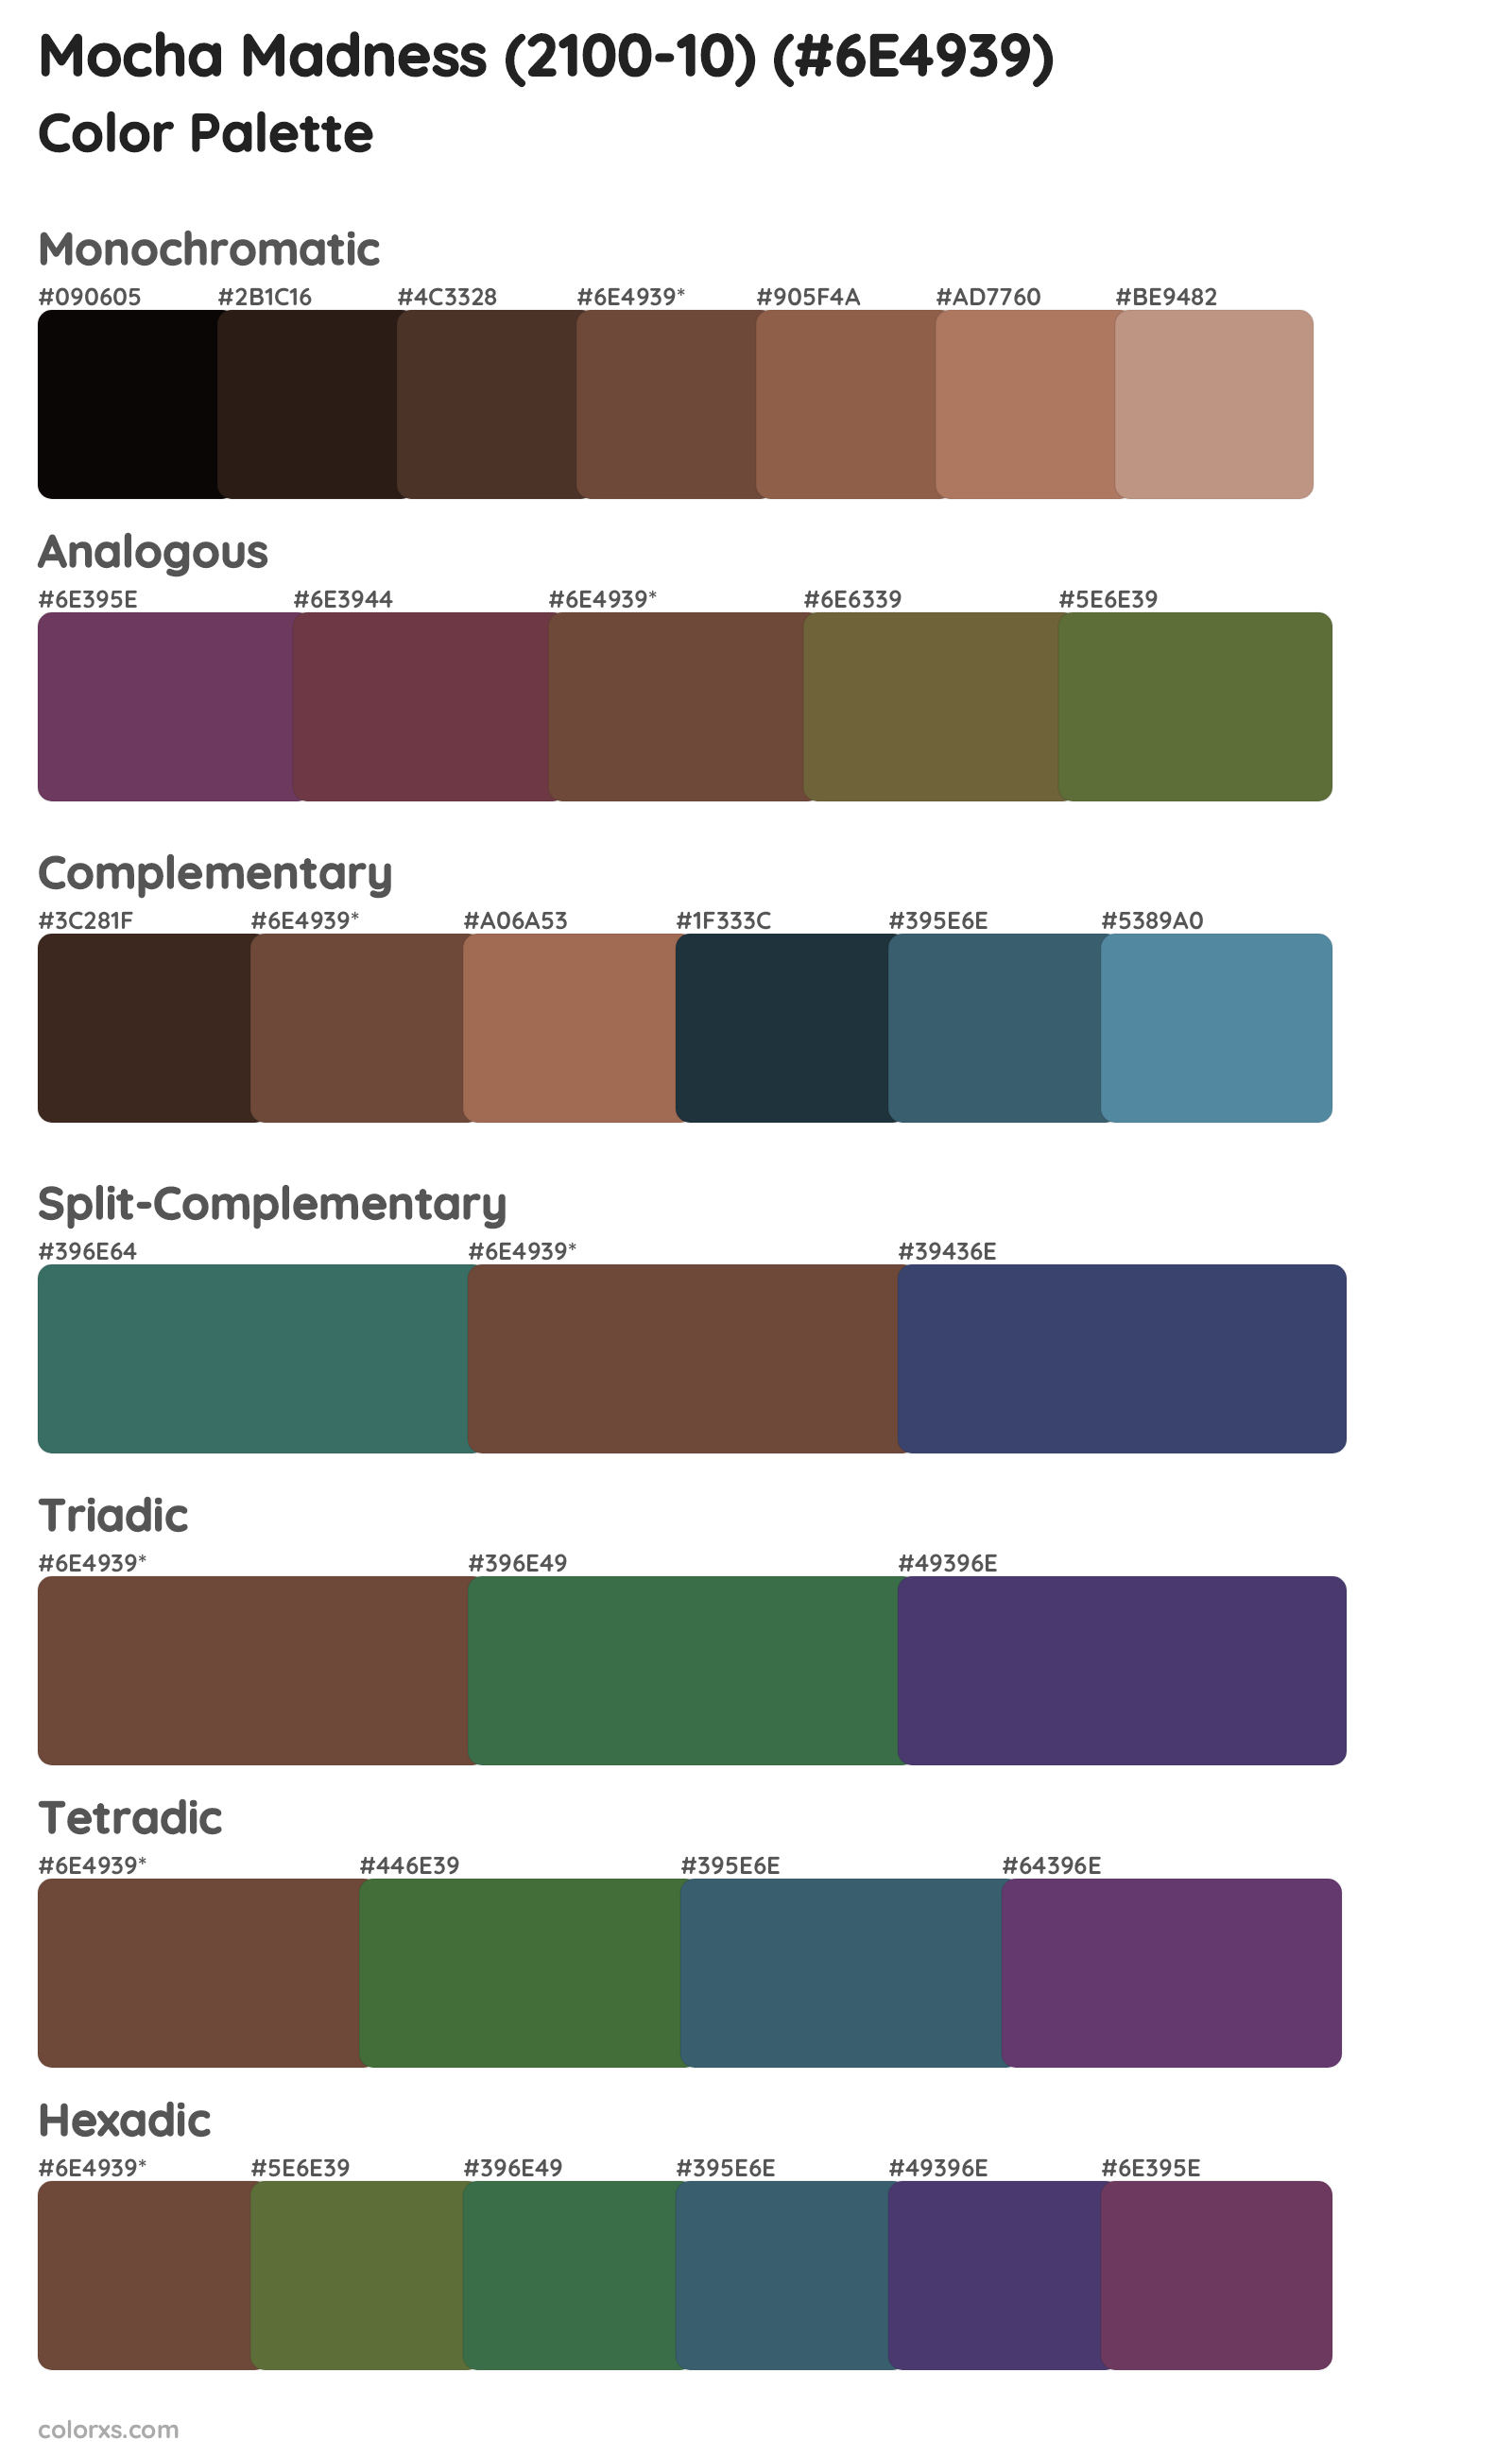 Mocha Madness (2100-10) Color Scheme Palettes